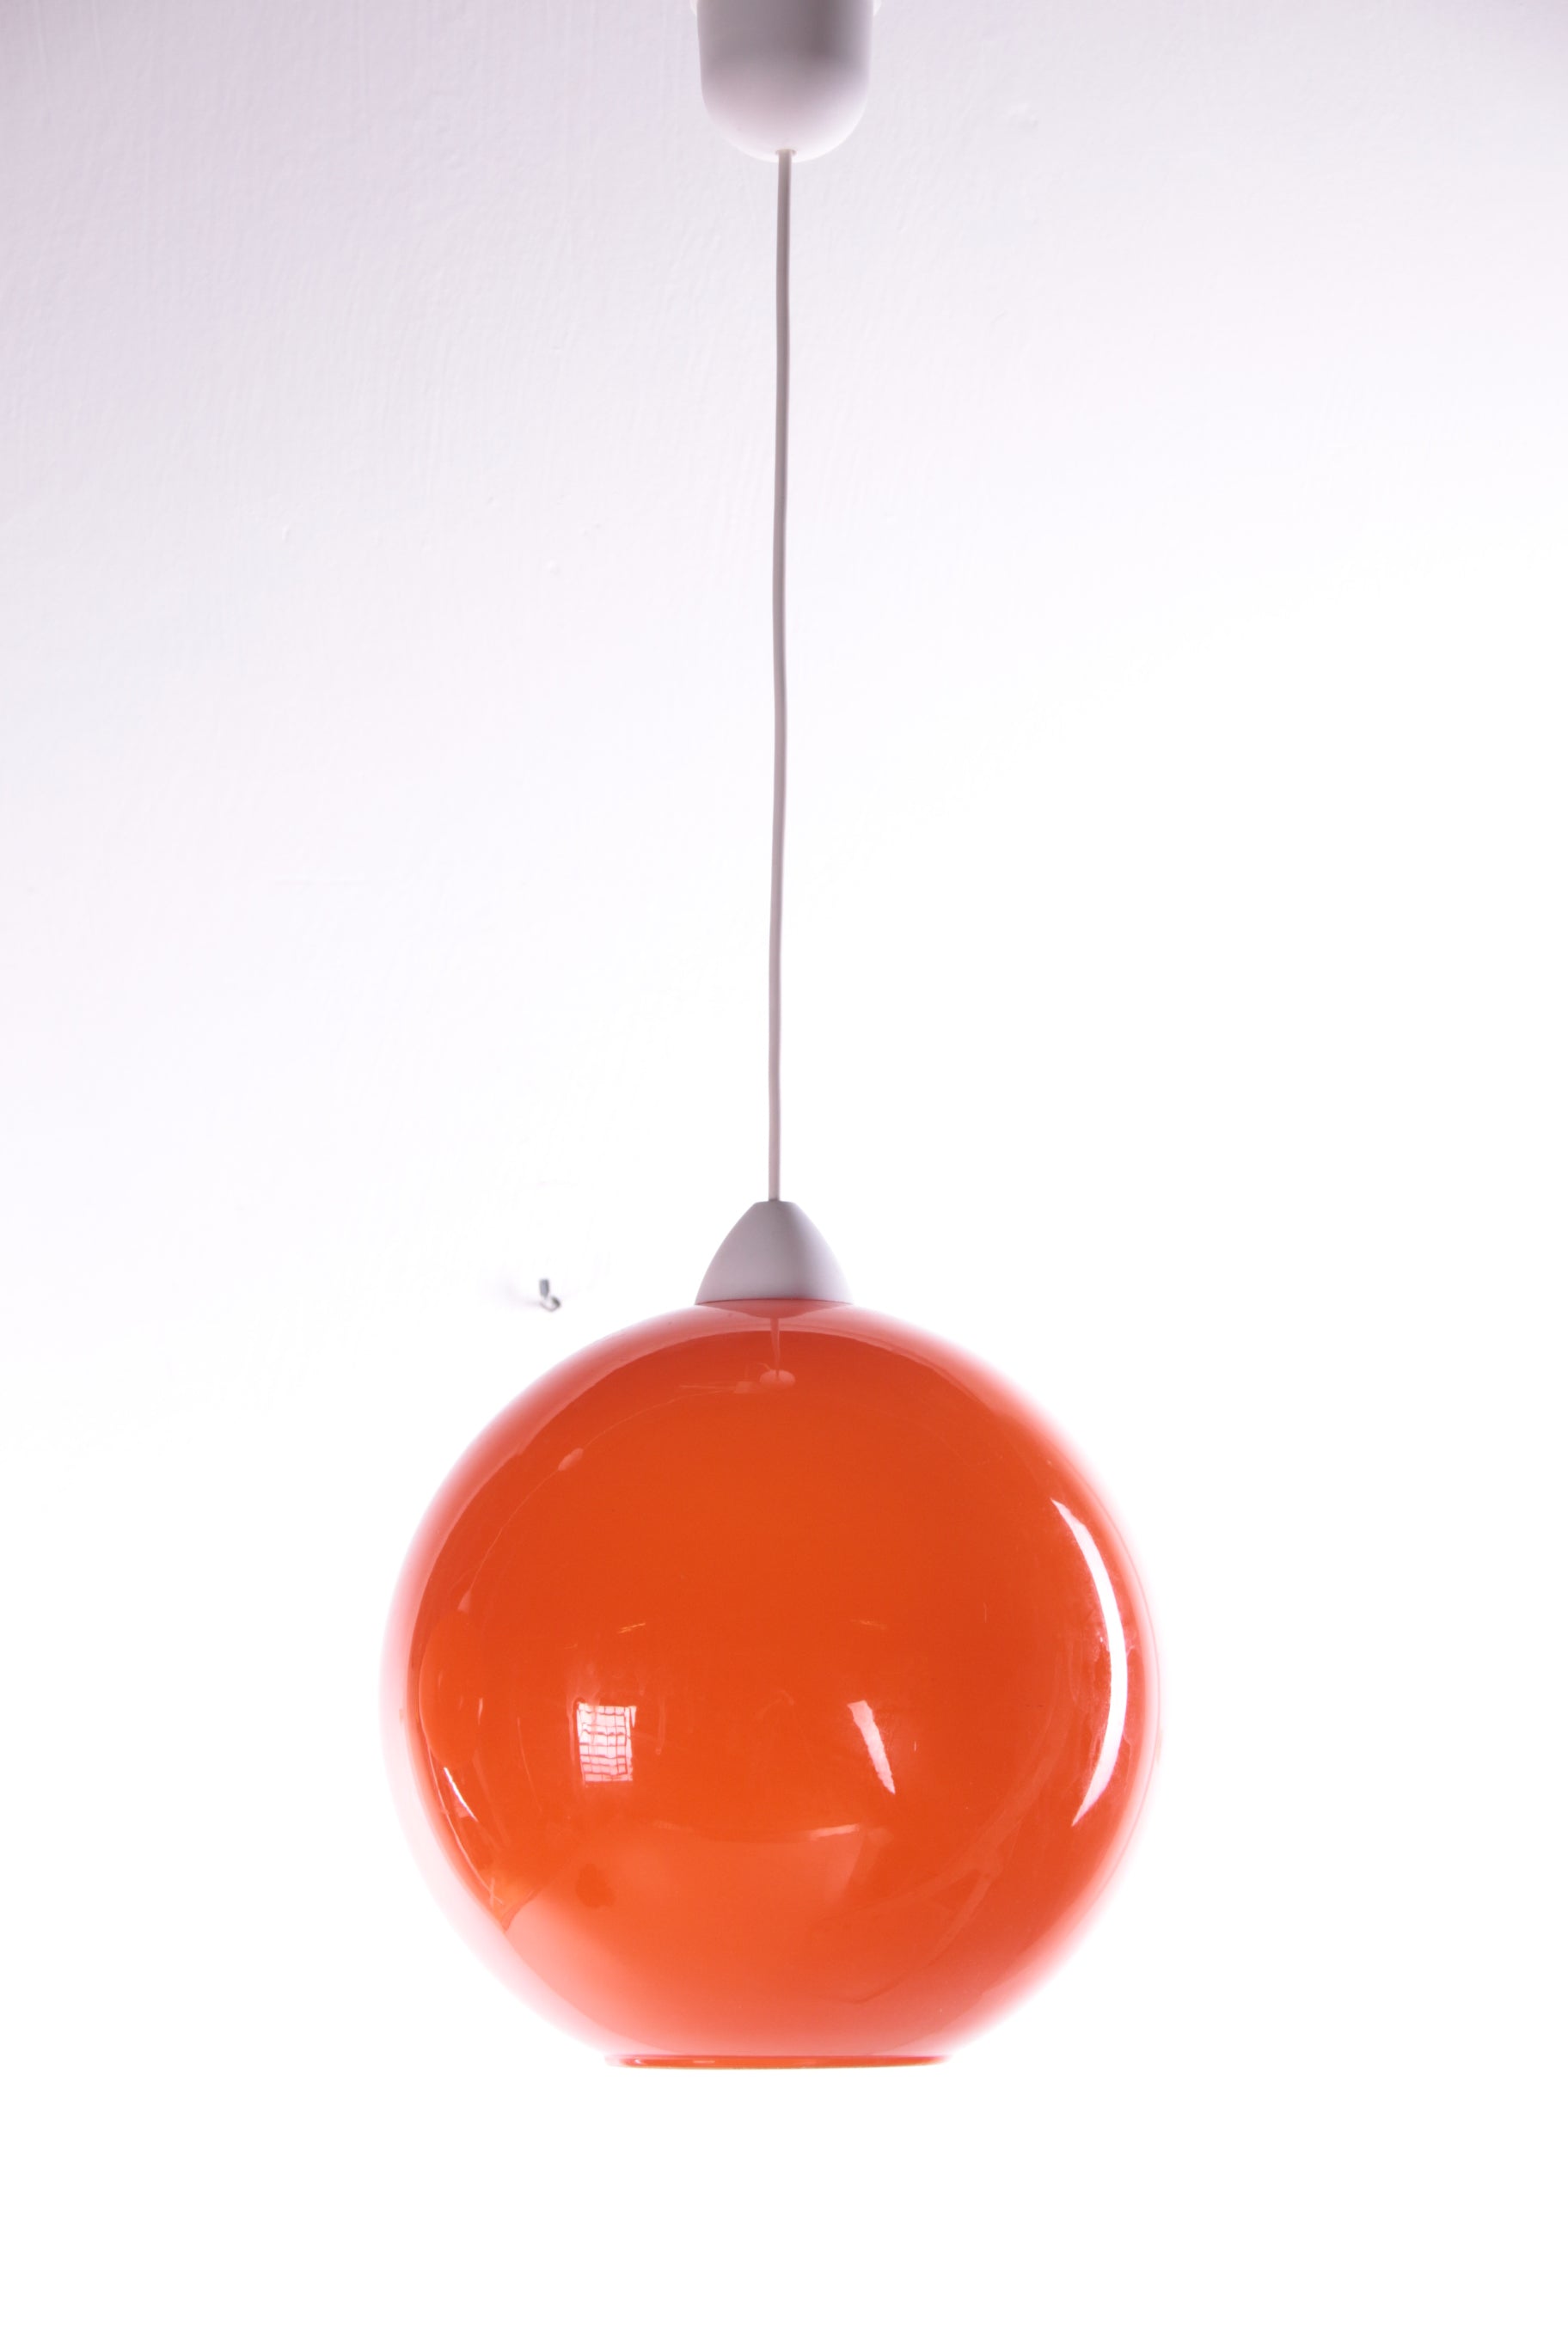 Hanglamp Model ui van Vistosi ontwerp van Alessandro Pianon 1960s voorkant licht uit